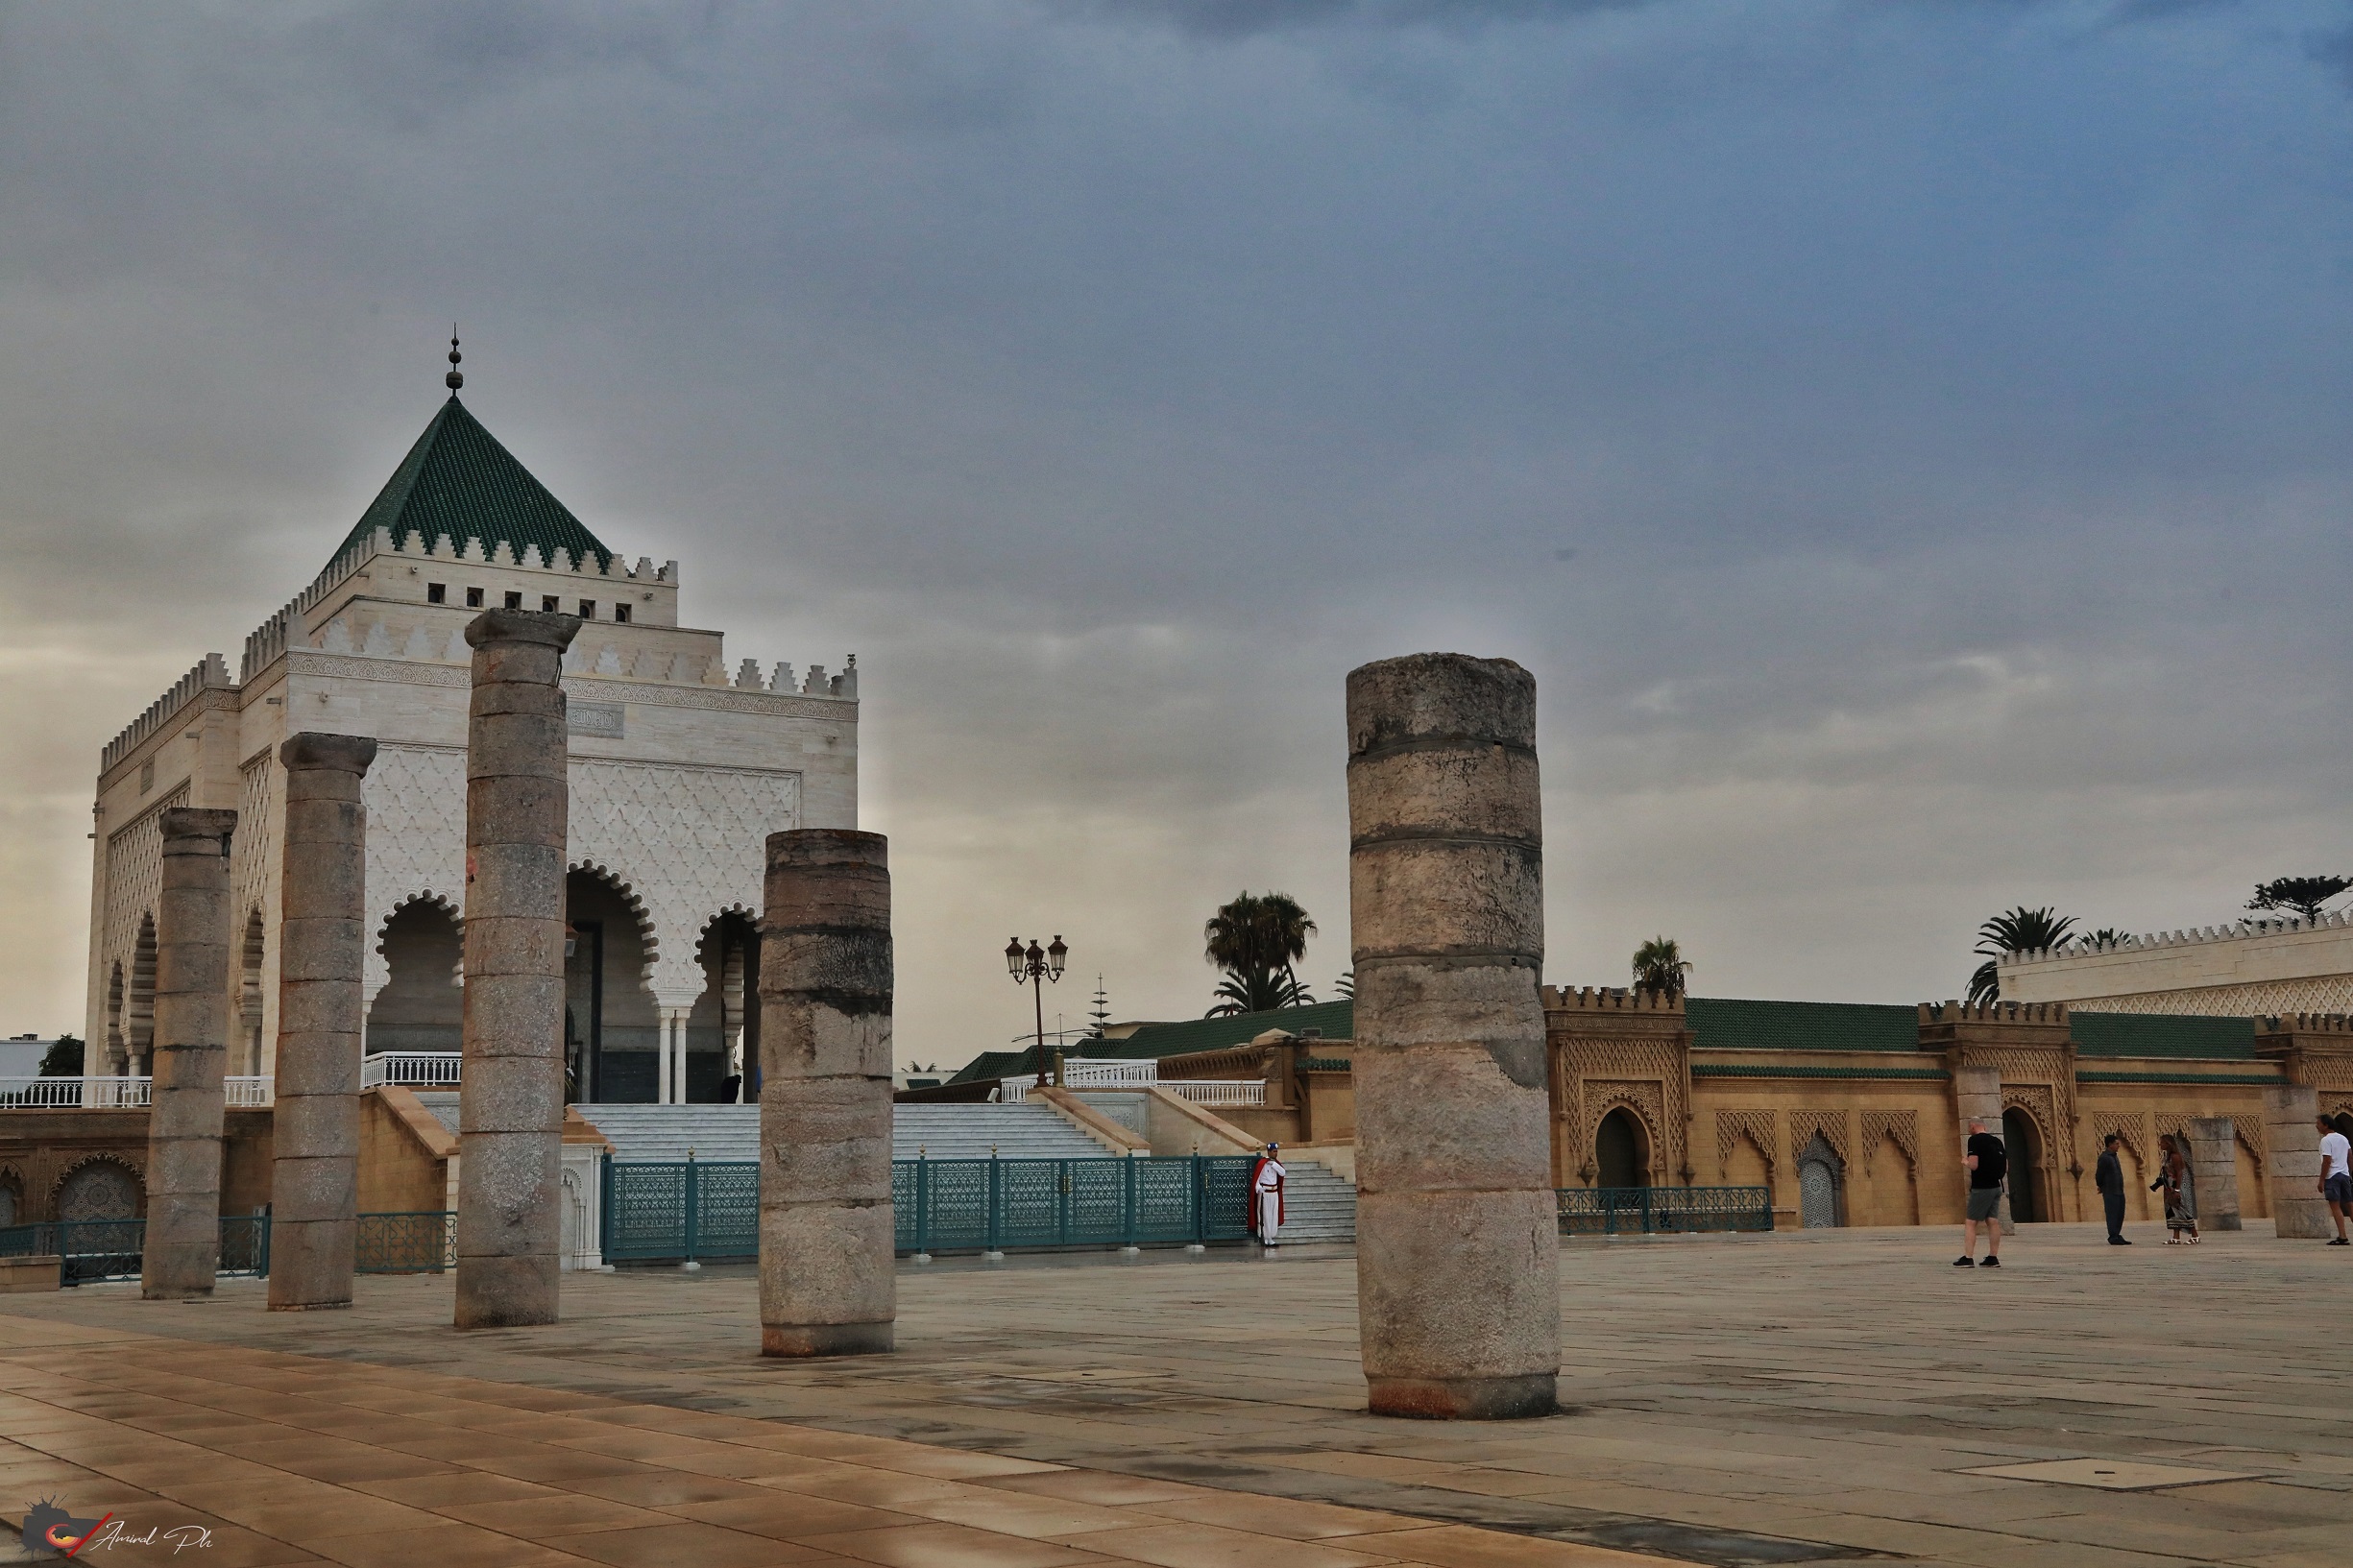 Day 01: Tangier - Rabat